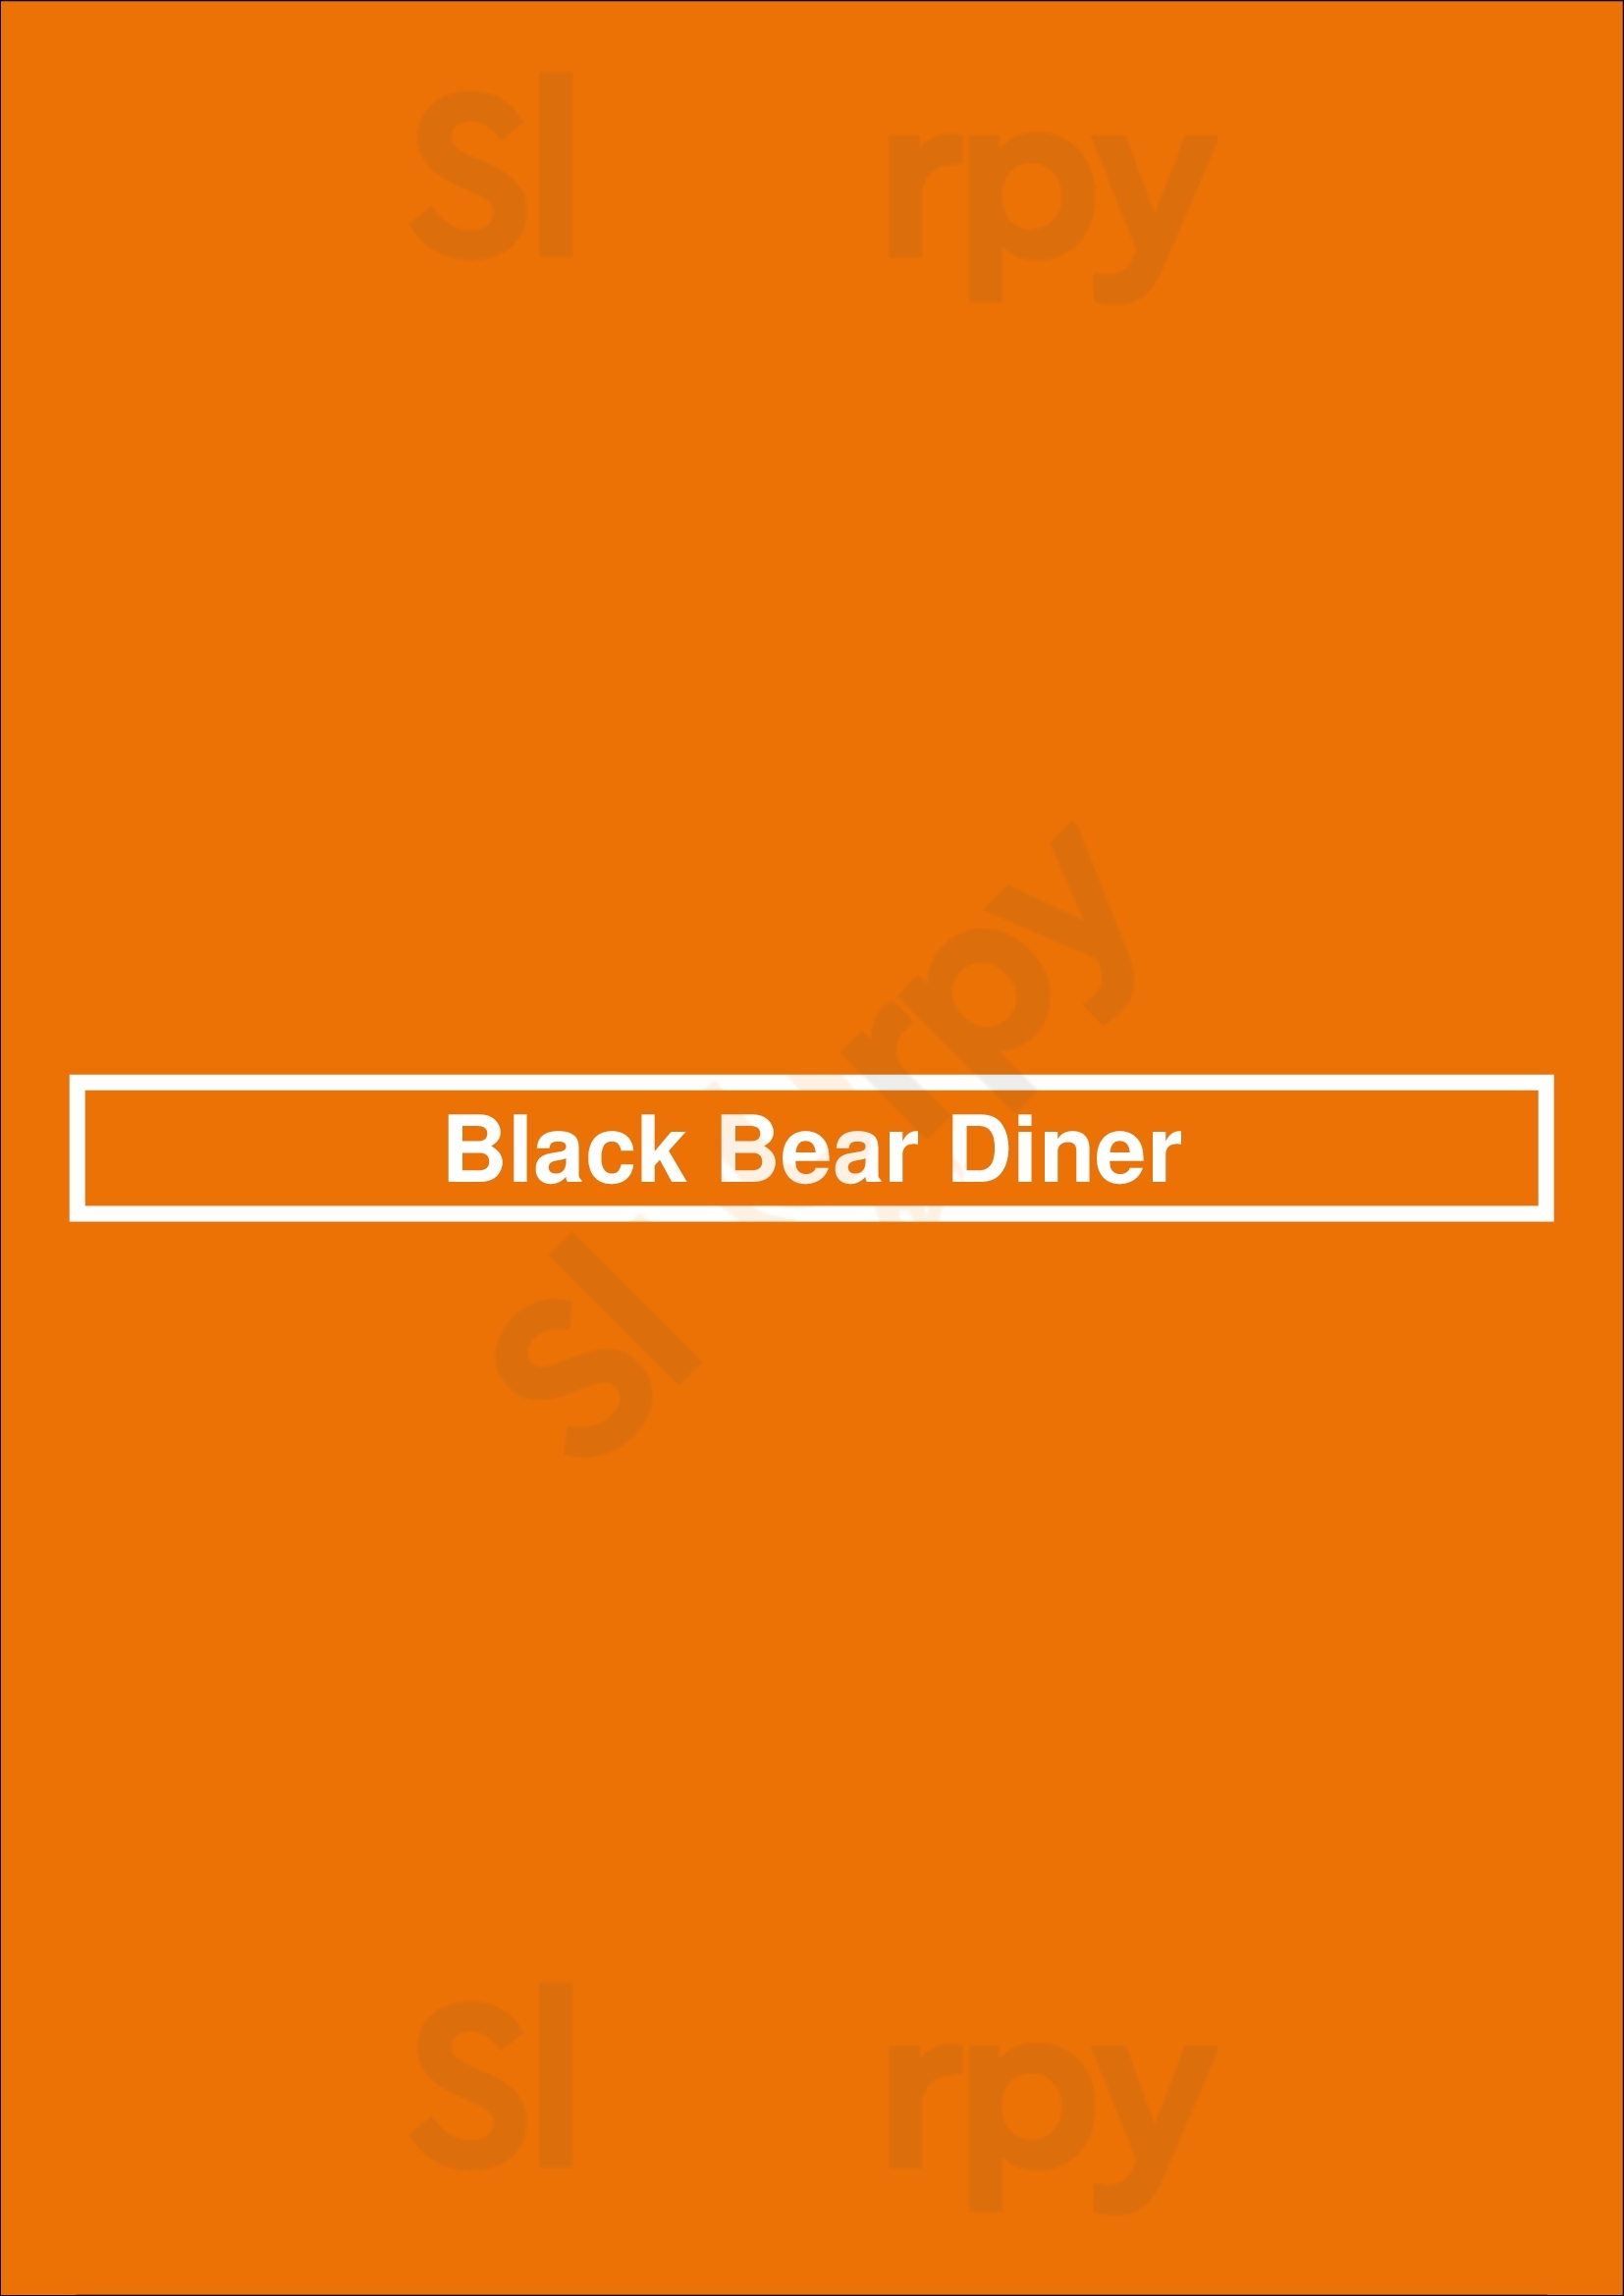 Black Bear Diner Sacramento Menu - 1